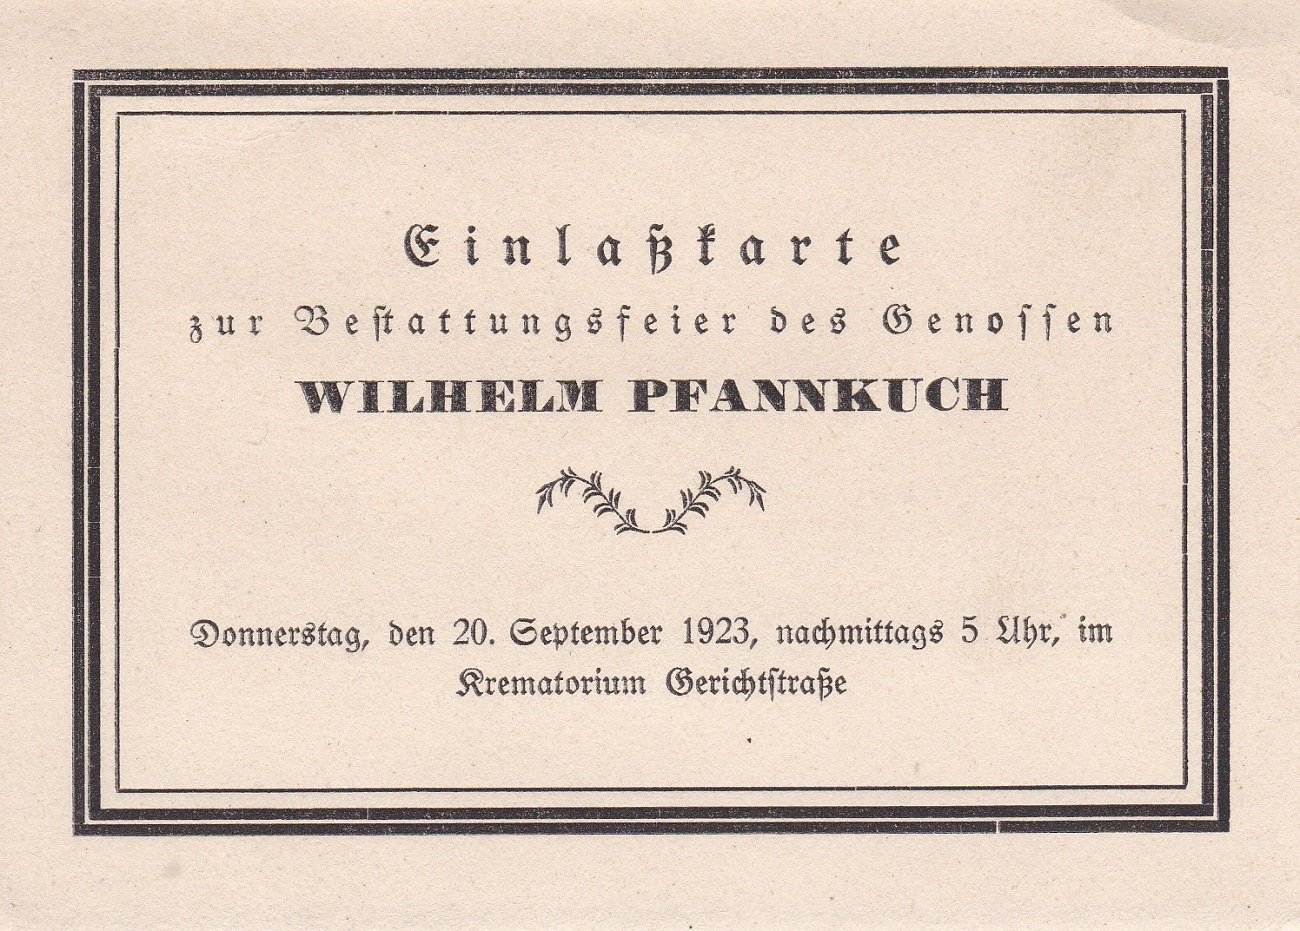 PFANNKUCH, Wilhelm. -  Einlaßkarte zur Bestattungsfeier des Genossen Wilhelm Pfannkuch. Donnerstag, den 20. September 1923, nachmittags 5 Uhr, im Krematorium Gerichtstraße. 